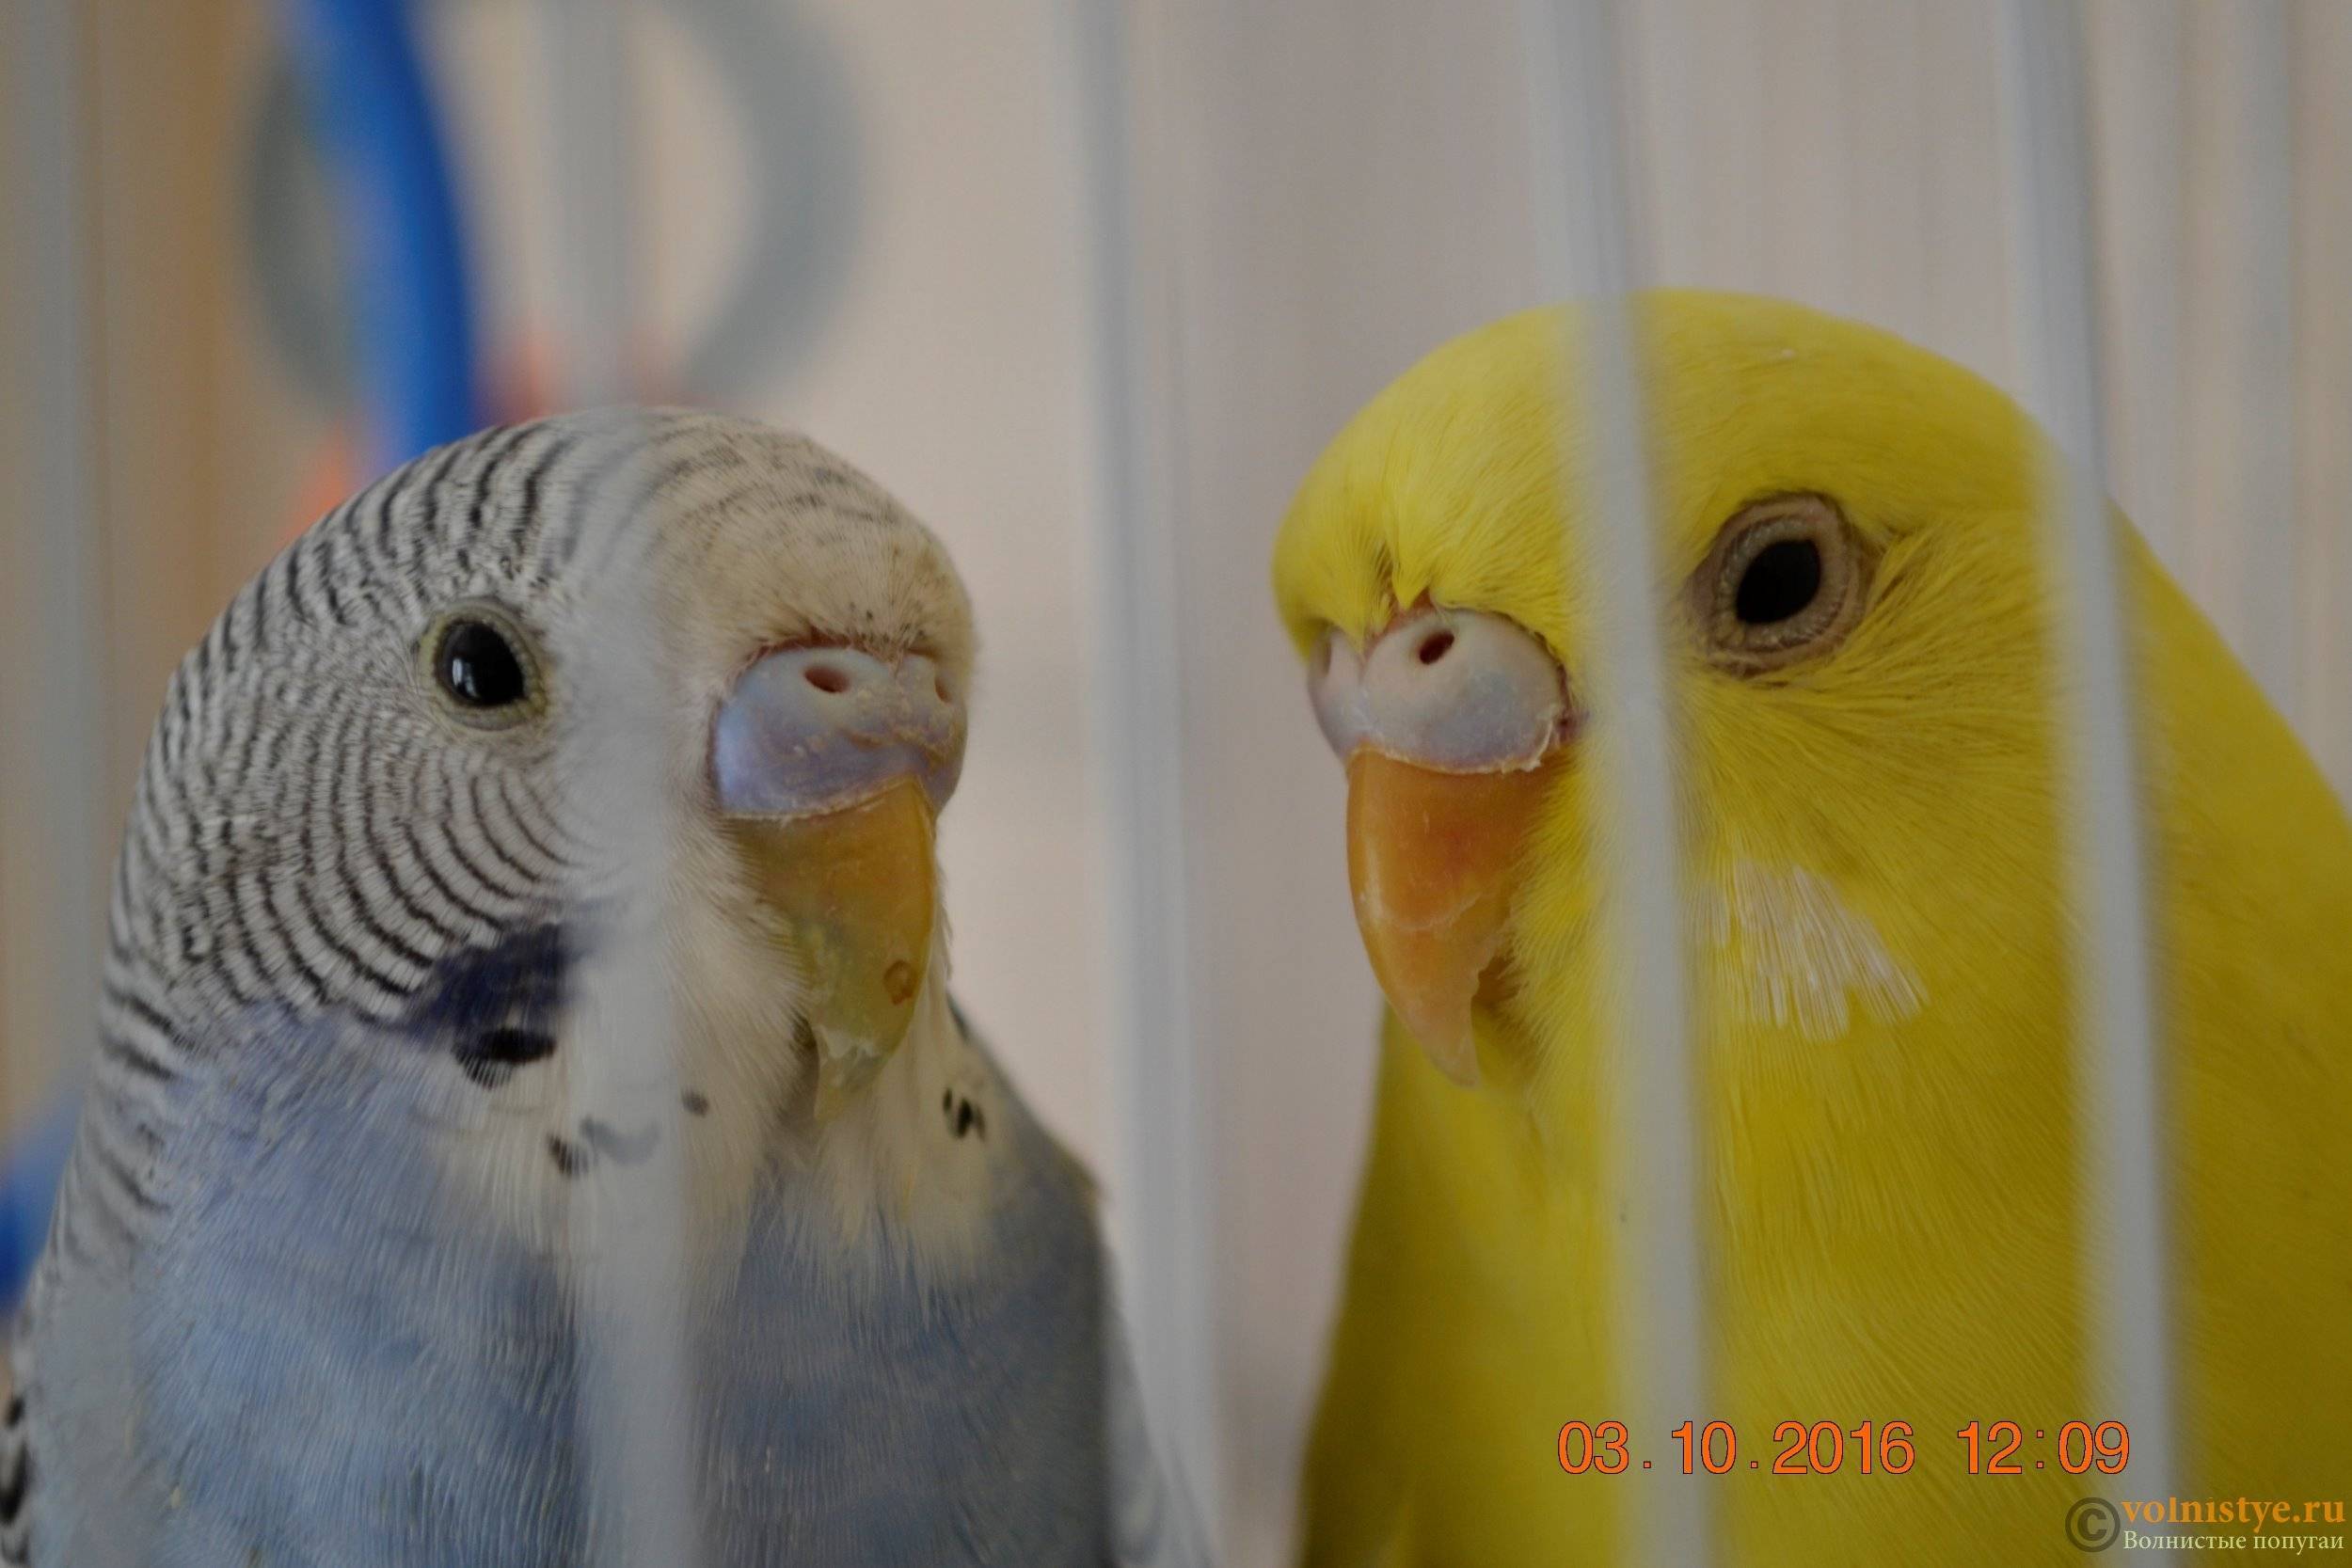 Как подобрать пару волнистому попугаю самцу или самке, каковы правила подбора, нужно ли соблюдать карантин